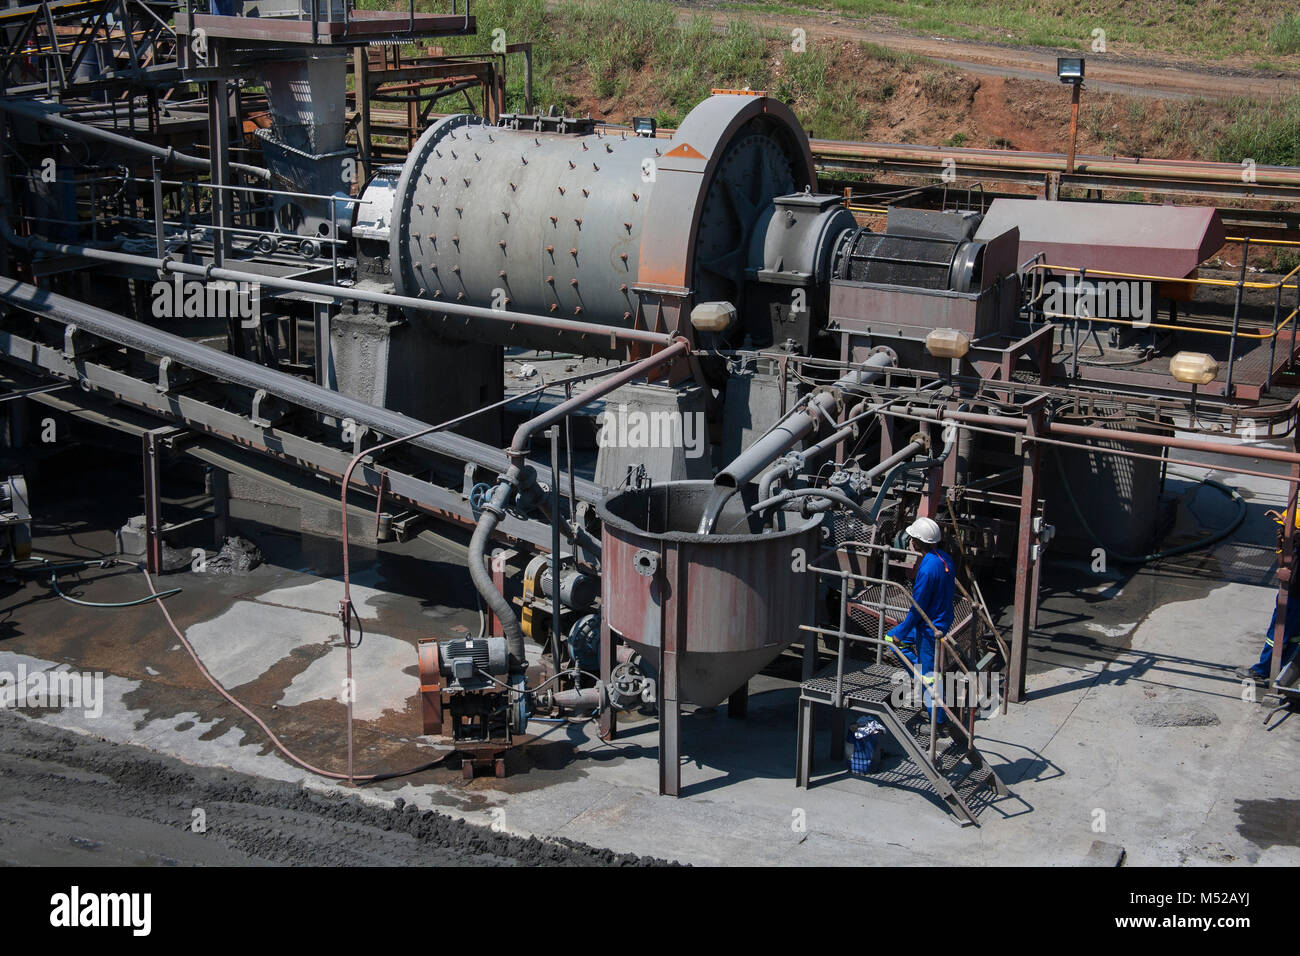 Vista superior de una trituradora y trabajador en una mina entre máquinas en una planta de procesamiento Foto de stock